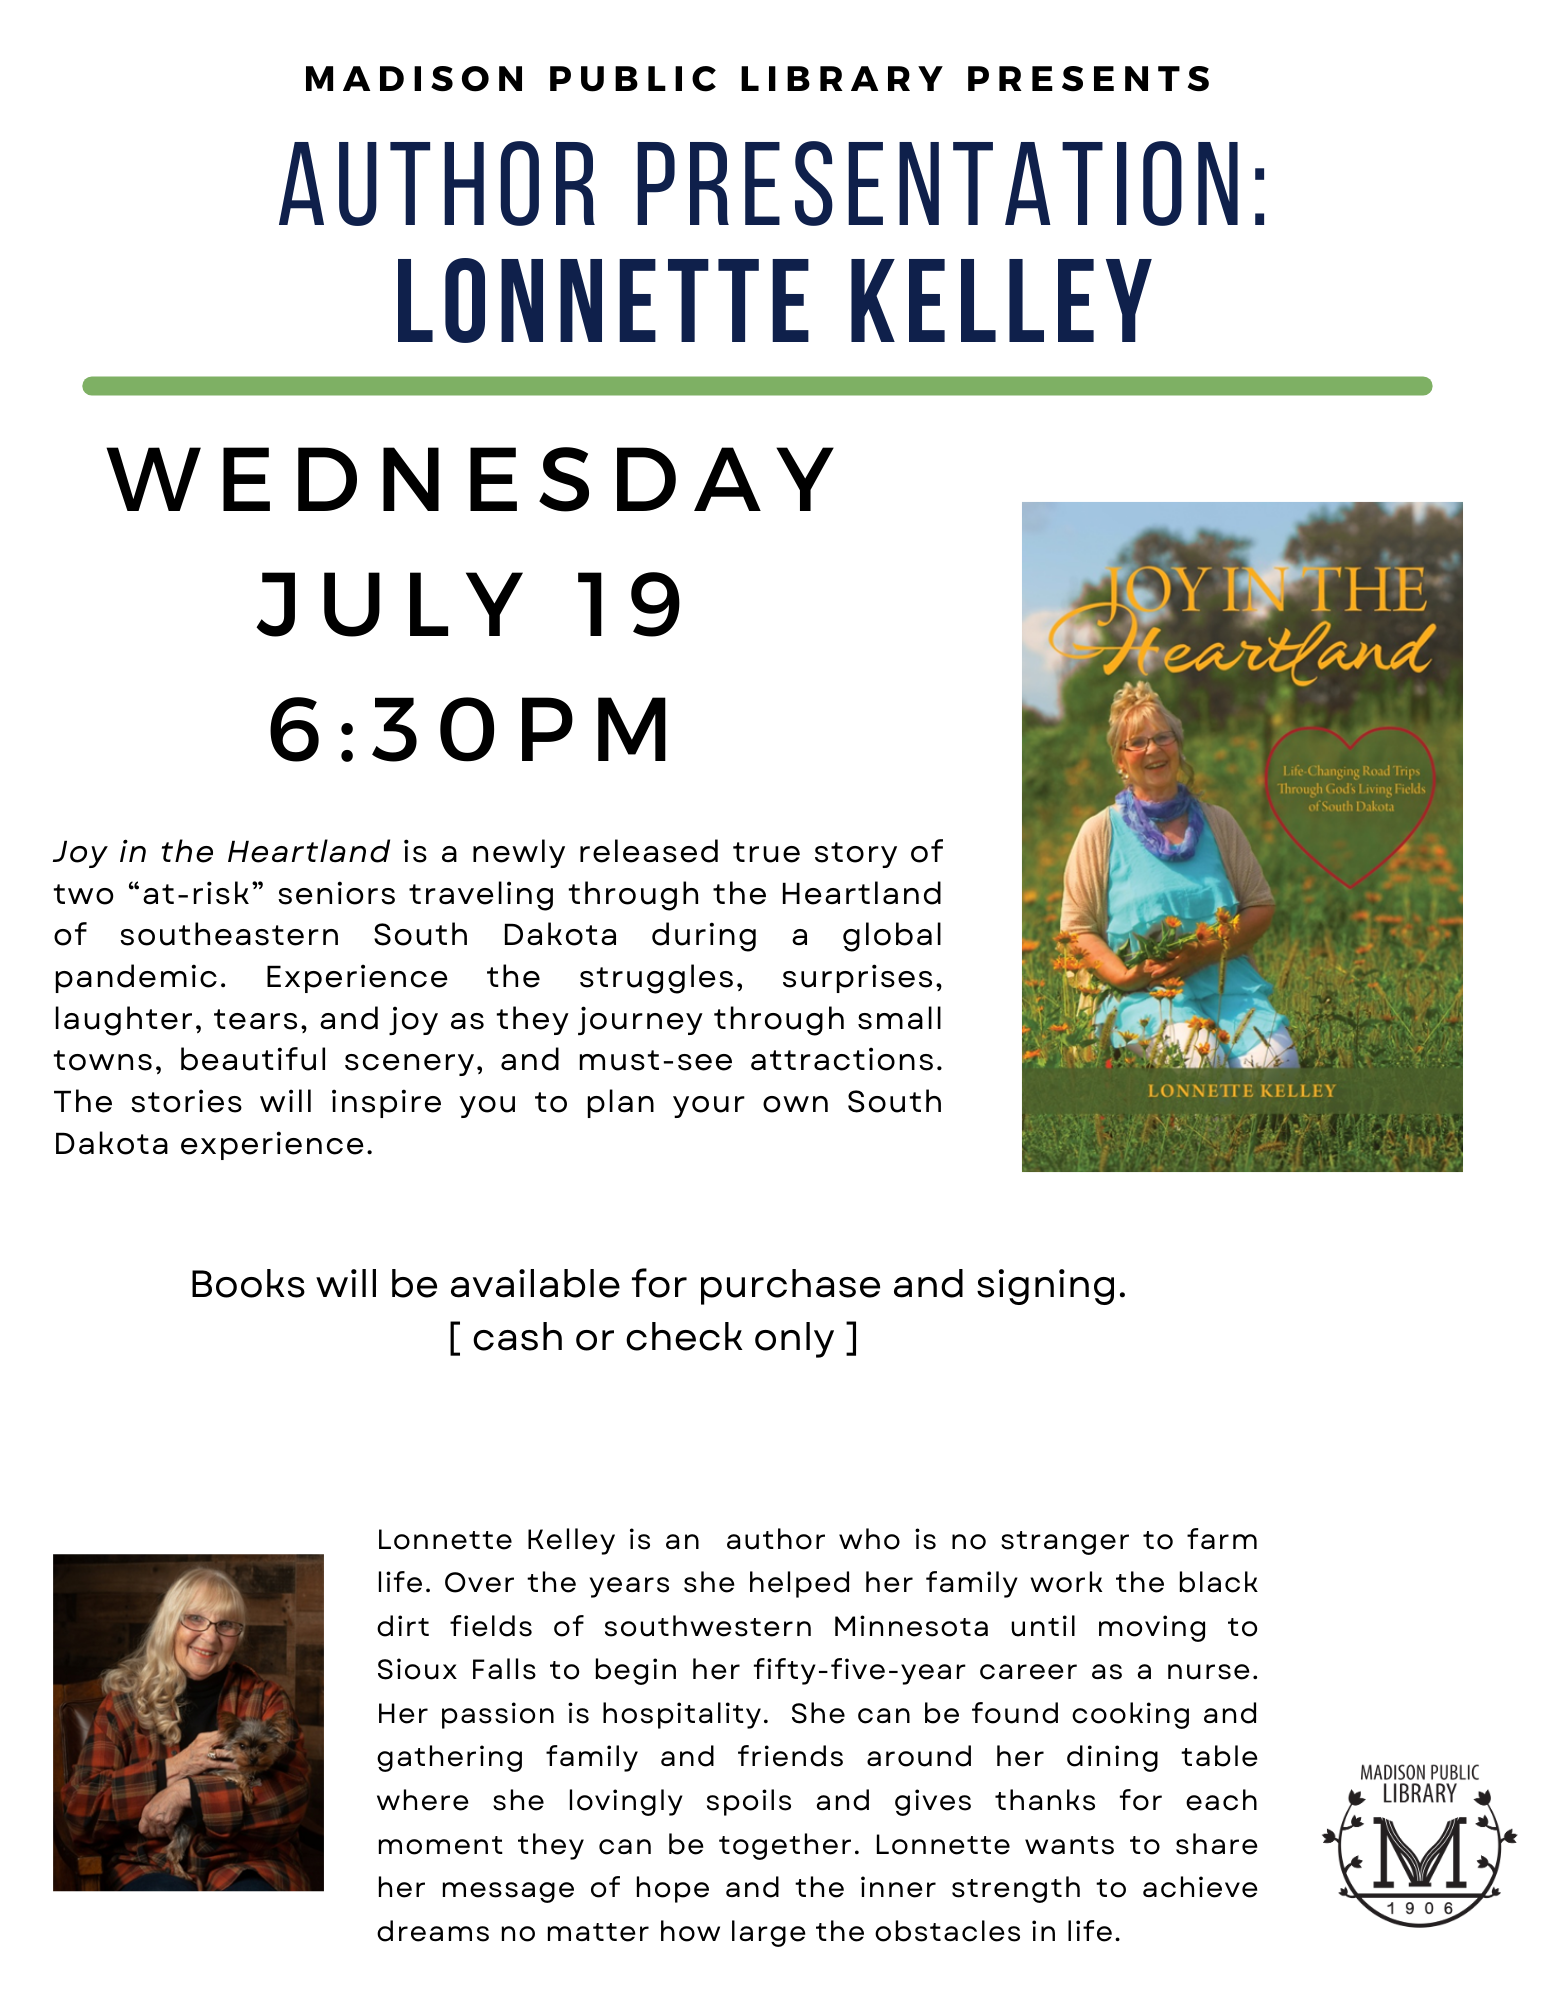 <h1 class="tribe-events-single-event-title">Author Presentation: Lonnette Kelley</h1>